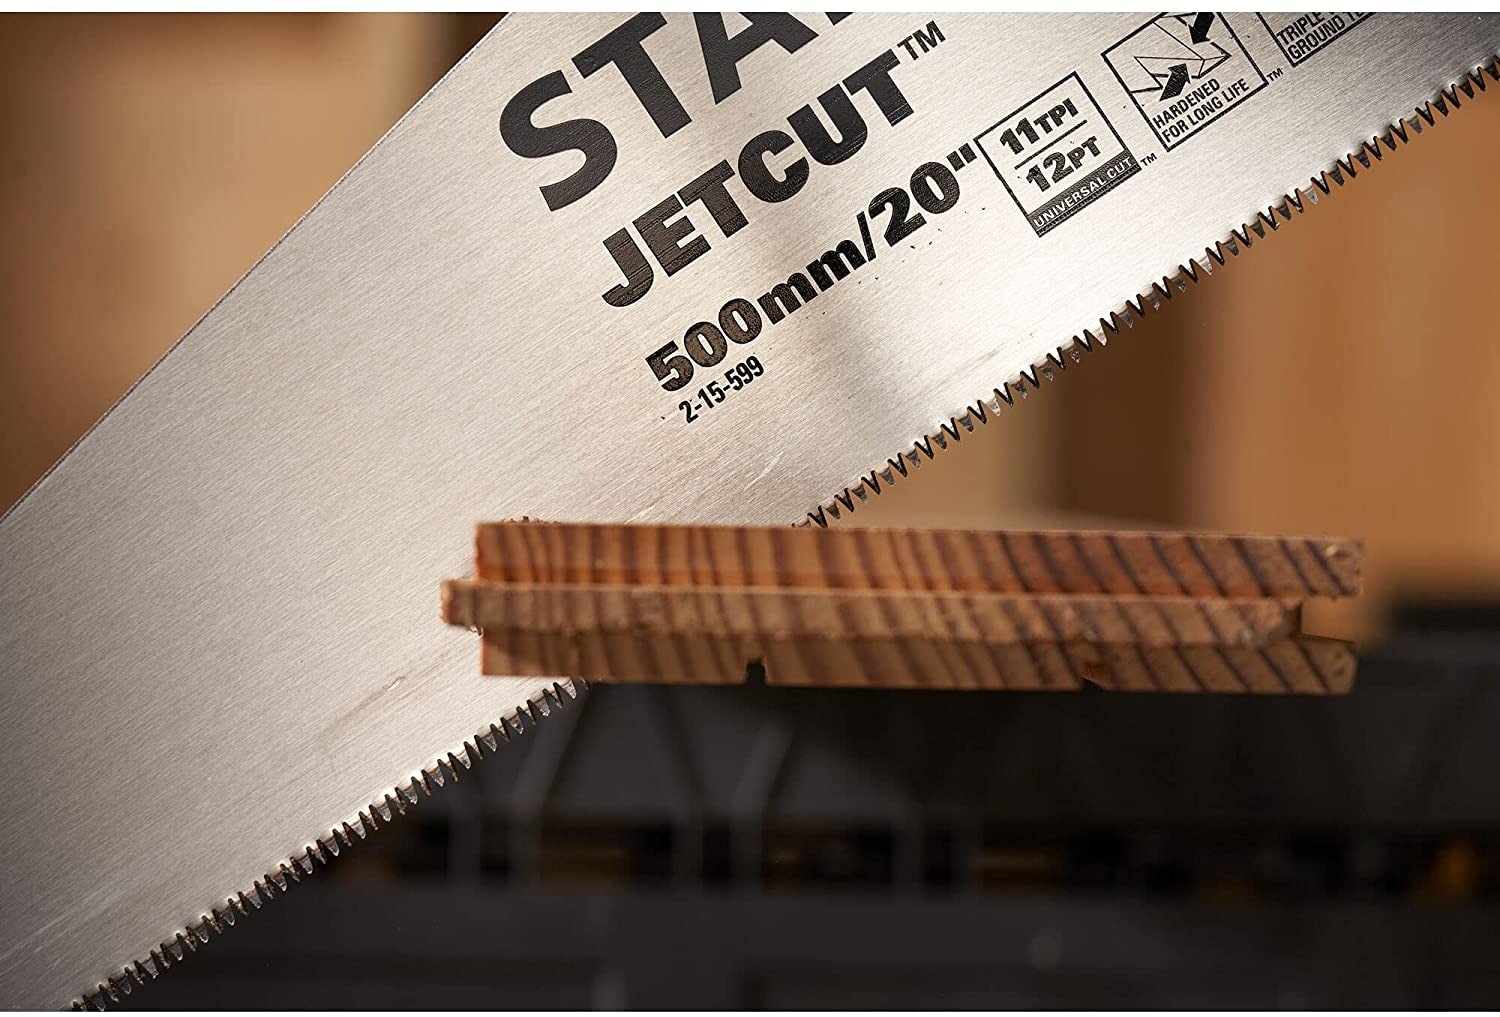 STANLEY Handsäge »2-15-599 Holzsäge JetCut Handsäge Fuchsschwanz«, für  Arbeiten an PVC, Plastik, Holz oder Dekorationsmaterialien online kaufen |  mit 3 Jahren XXL Garantie